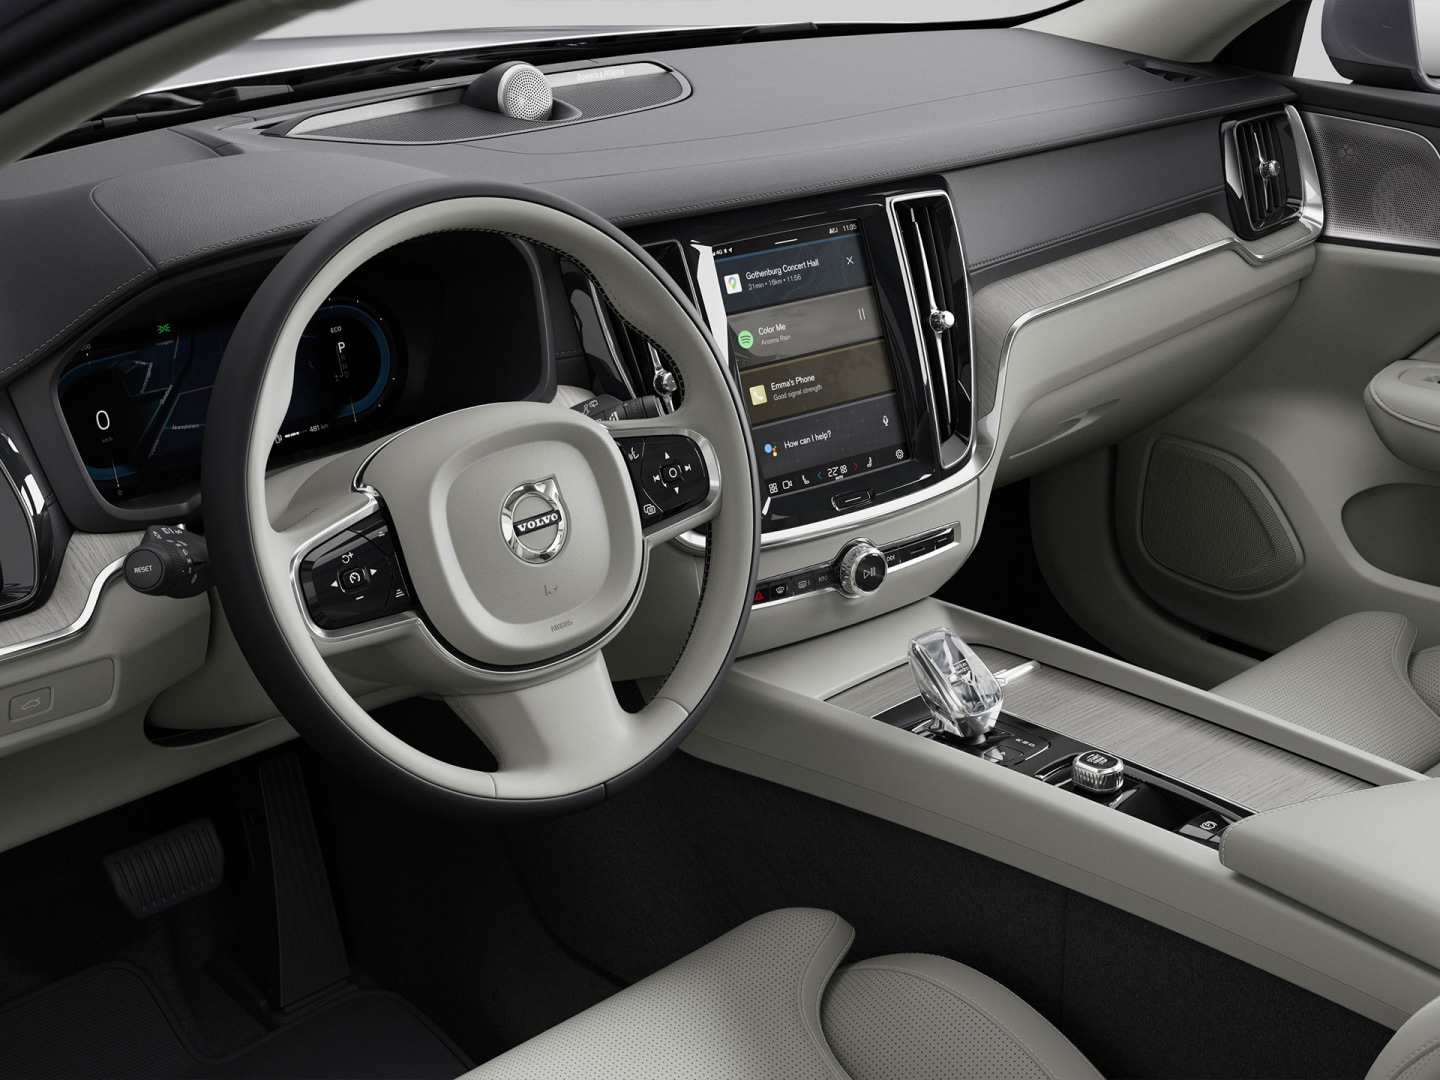 Zicht vanaf de passagierskant op het stuurwiel, het dashboard, de ventilatieroosters en het infotainmentaanraakscherm van de Volvo V60 mild hybrid.